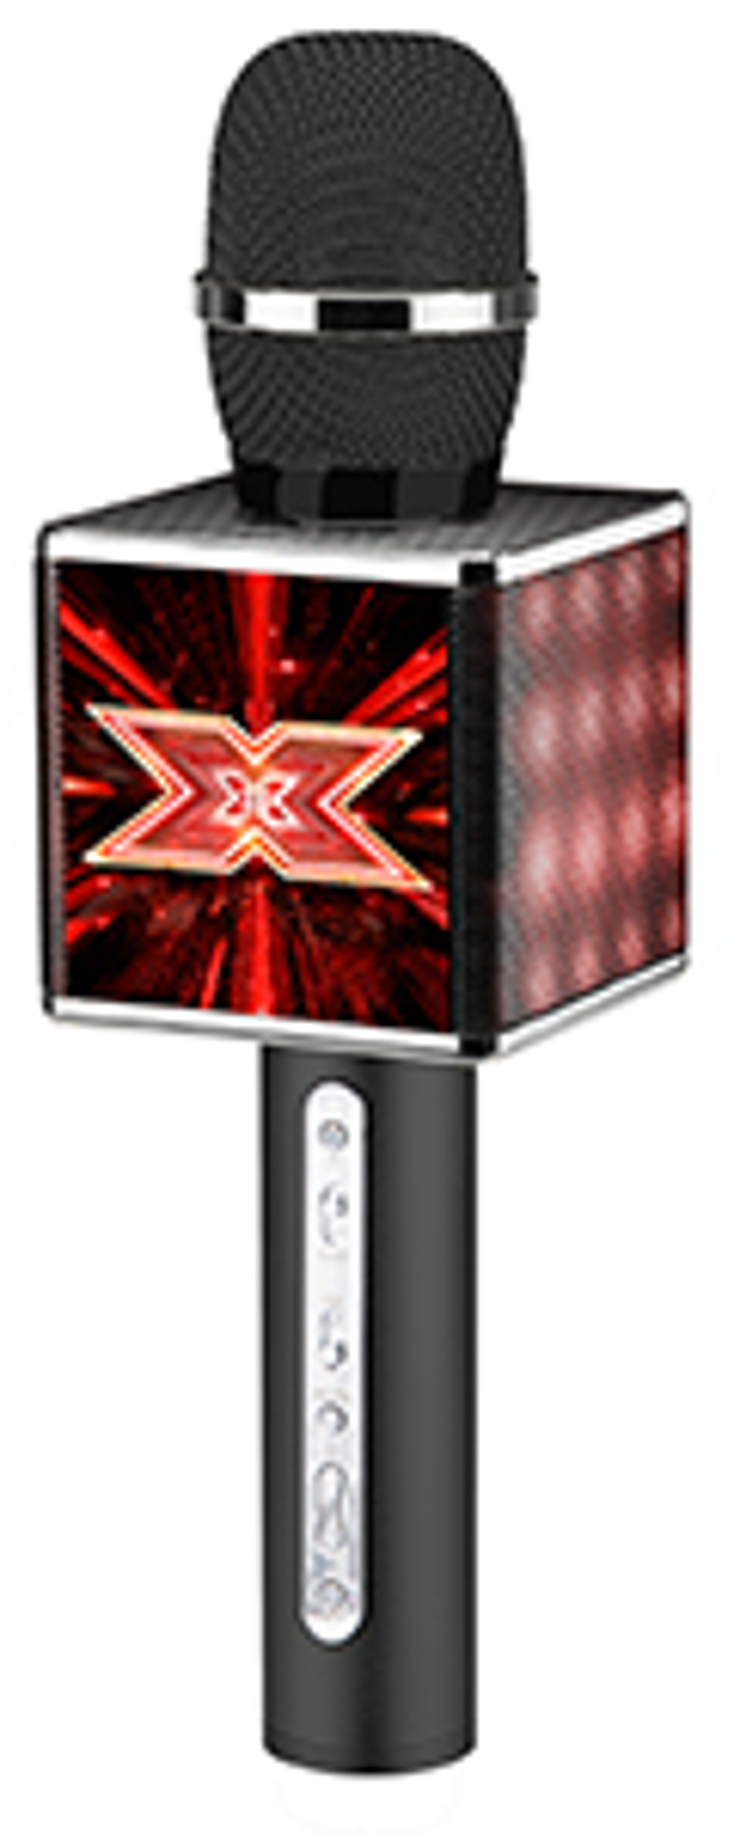 'X-Factor' Inspires Line of Tech Accessories